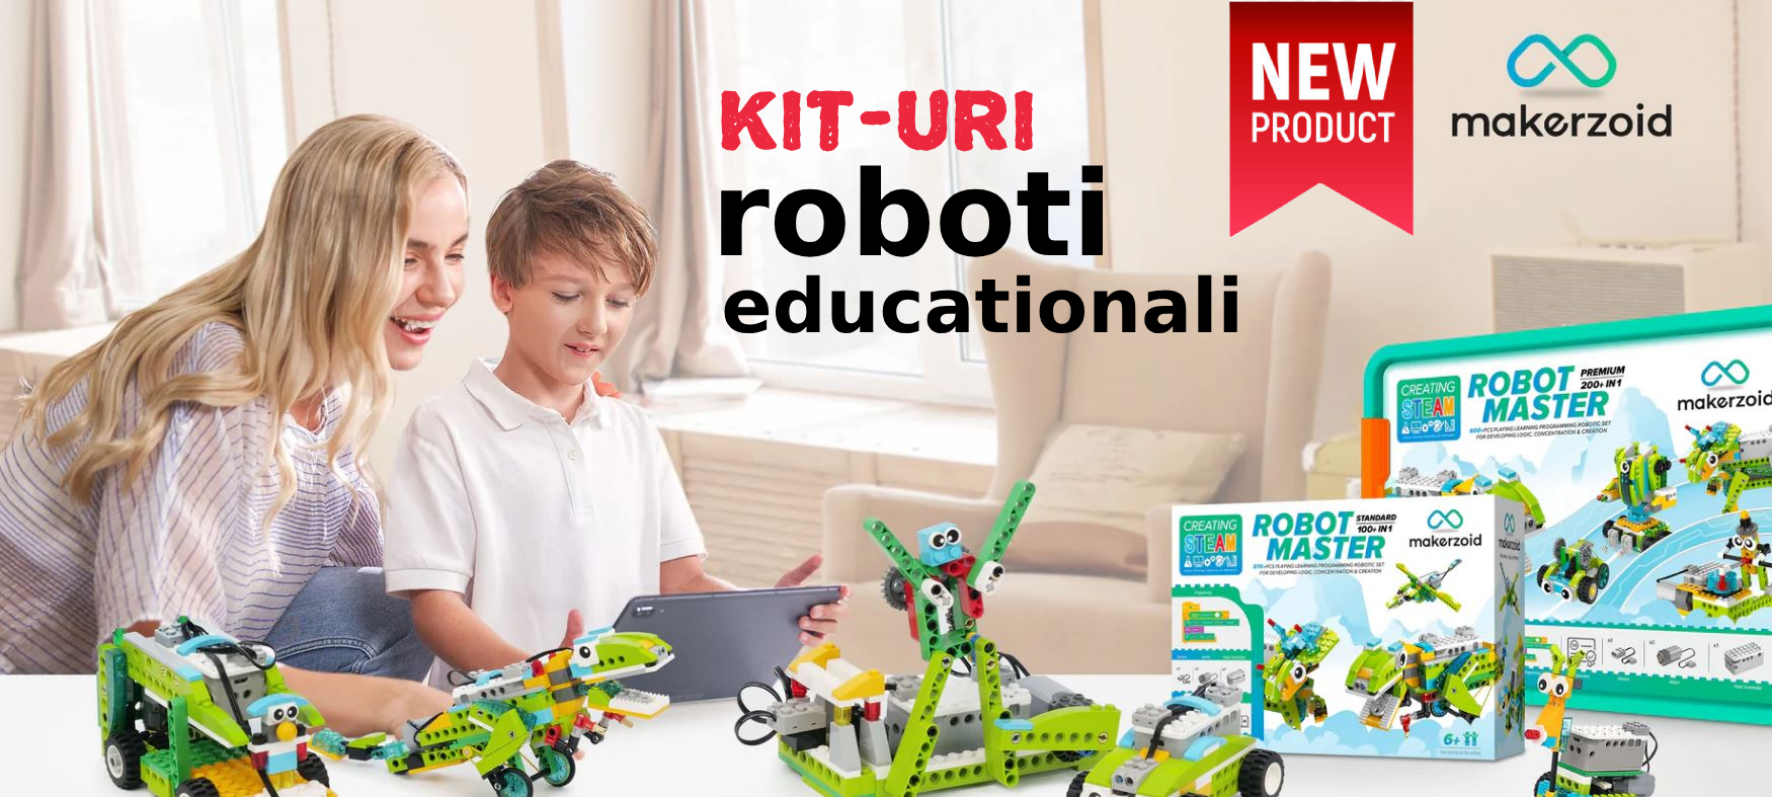 Kit-uri roboti educationali MAKERZOID